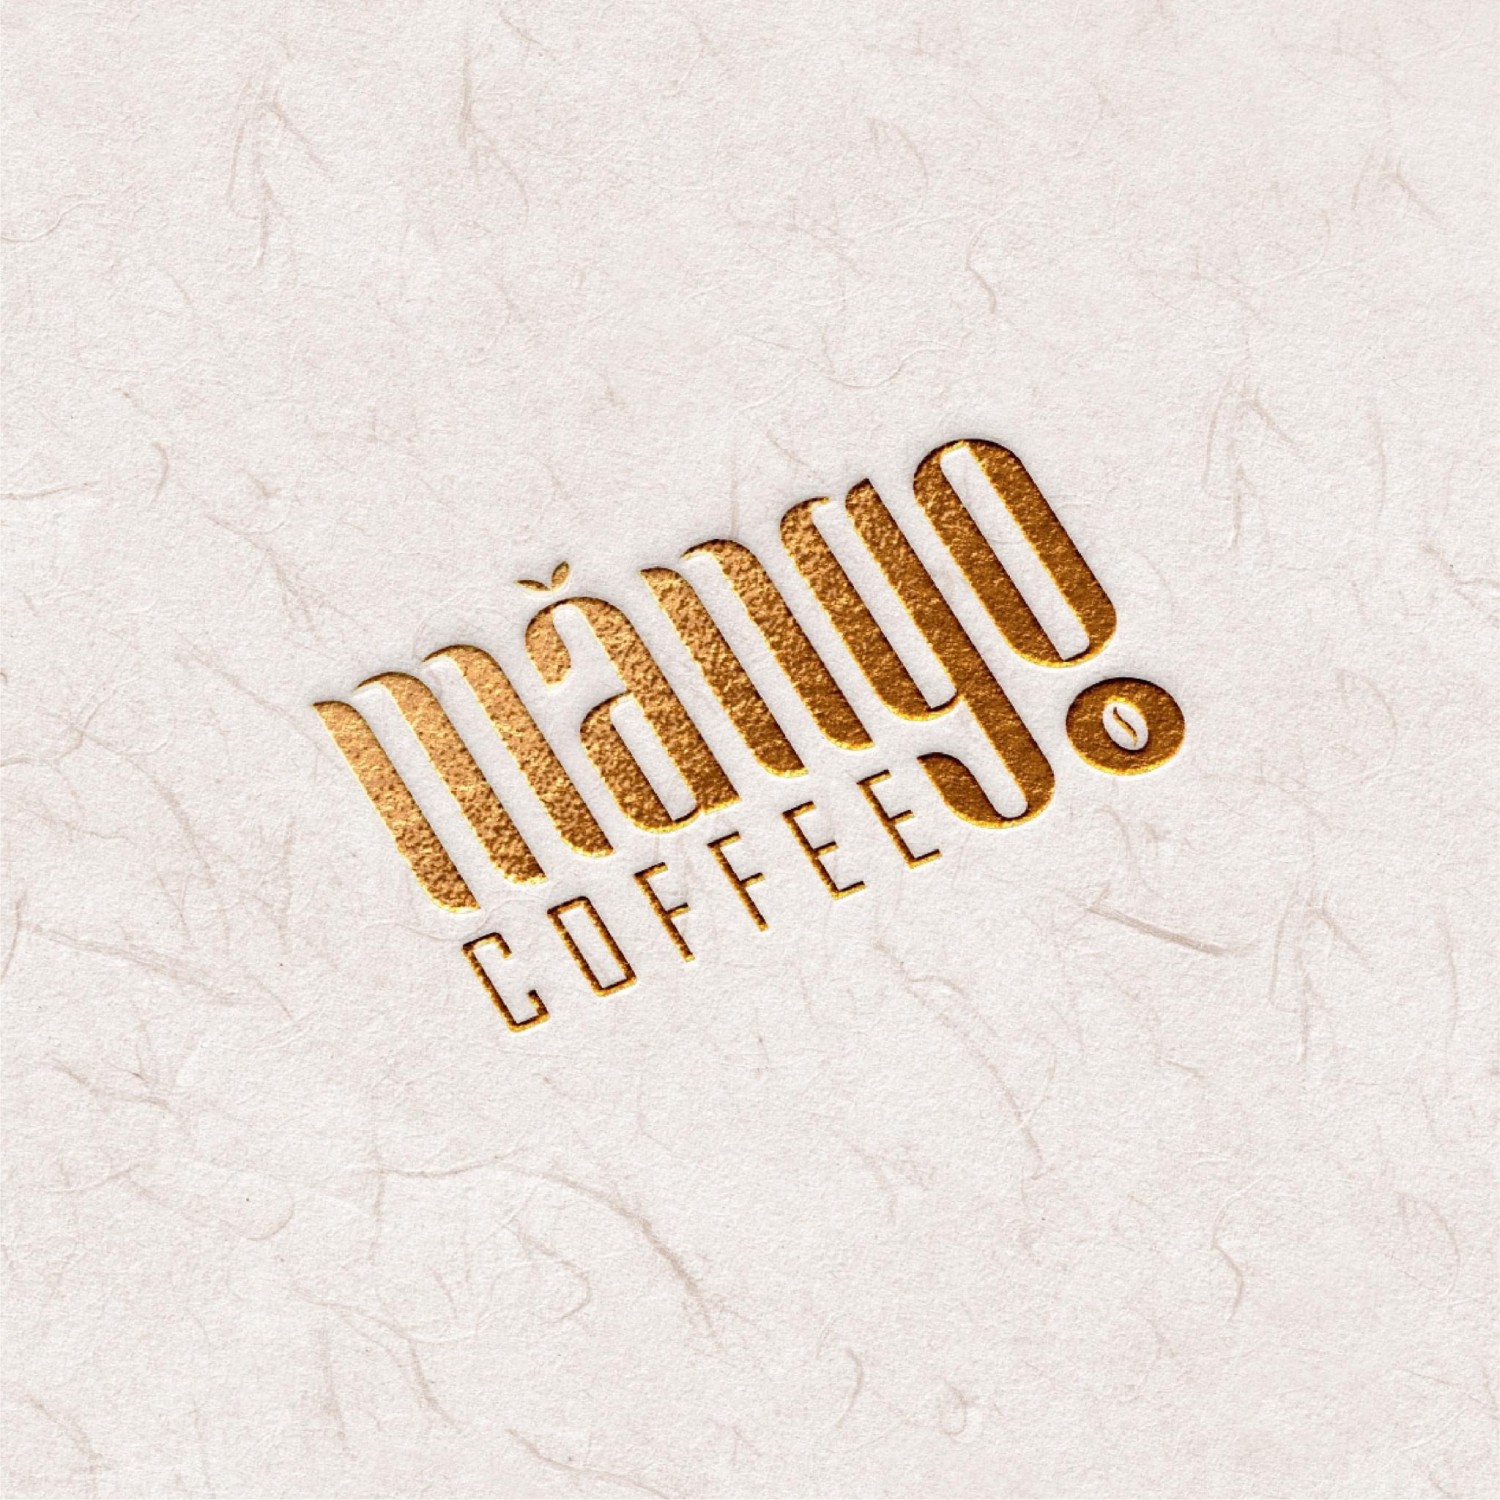 Mawngo Coffee